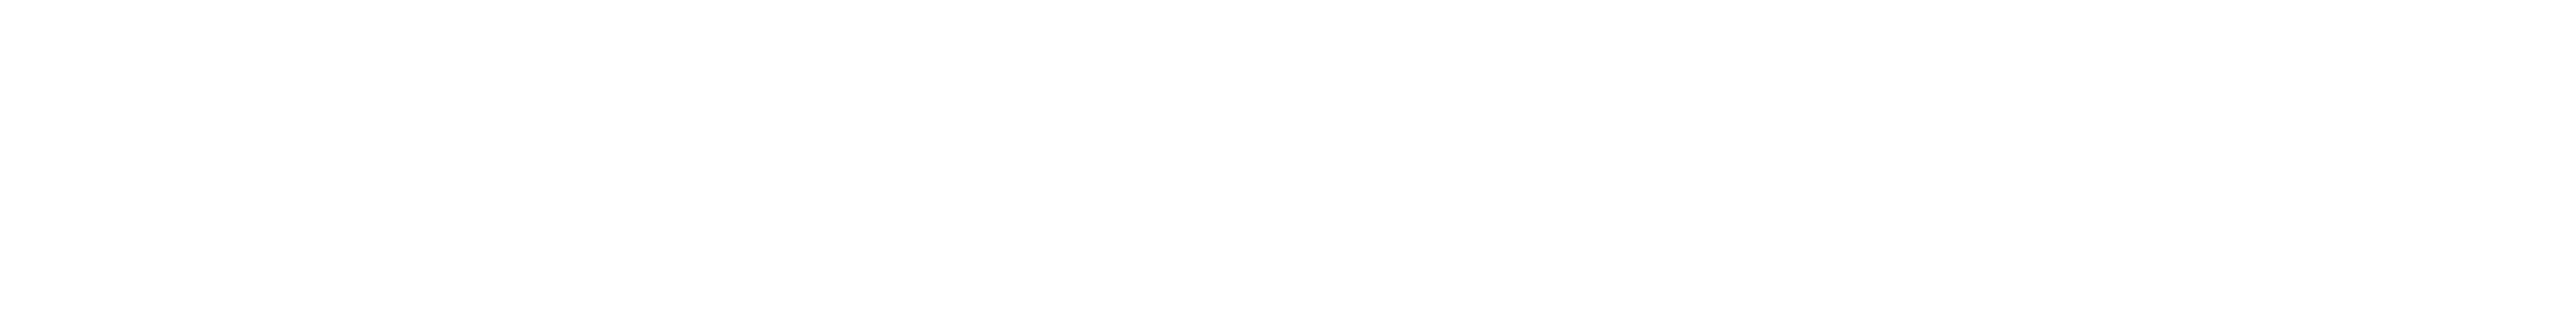 Goodstuff header logo